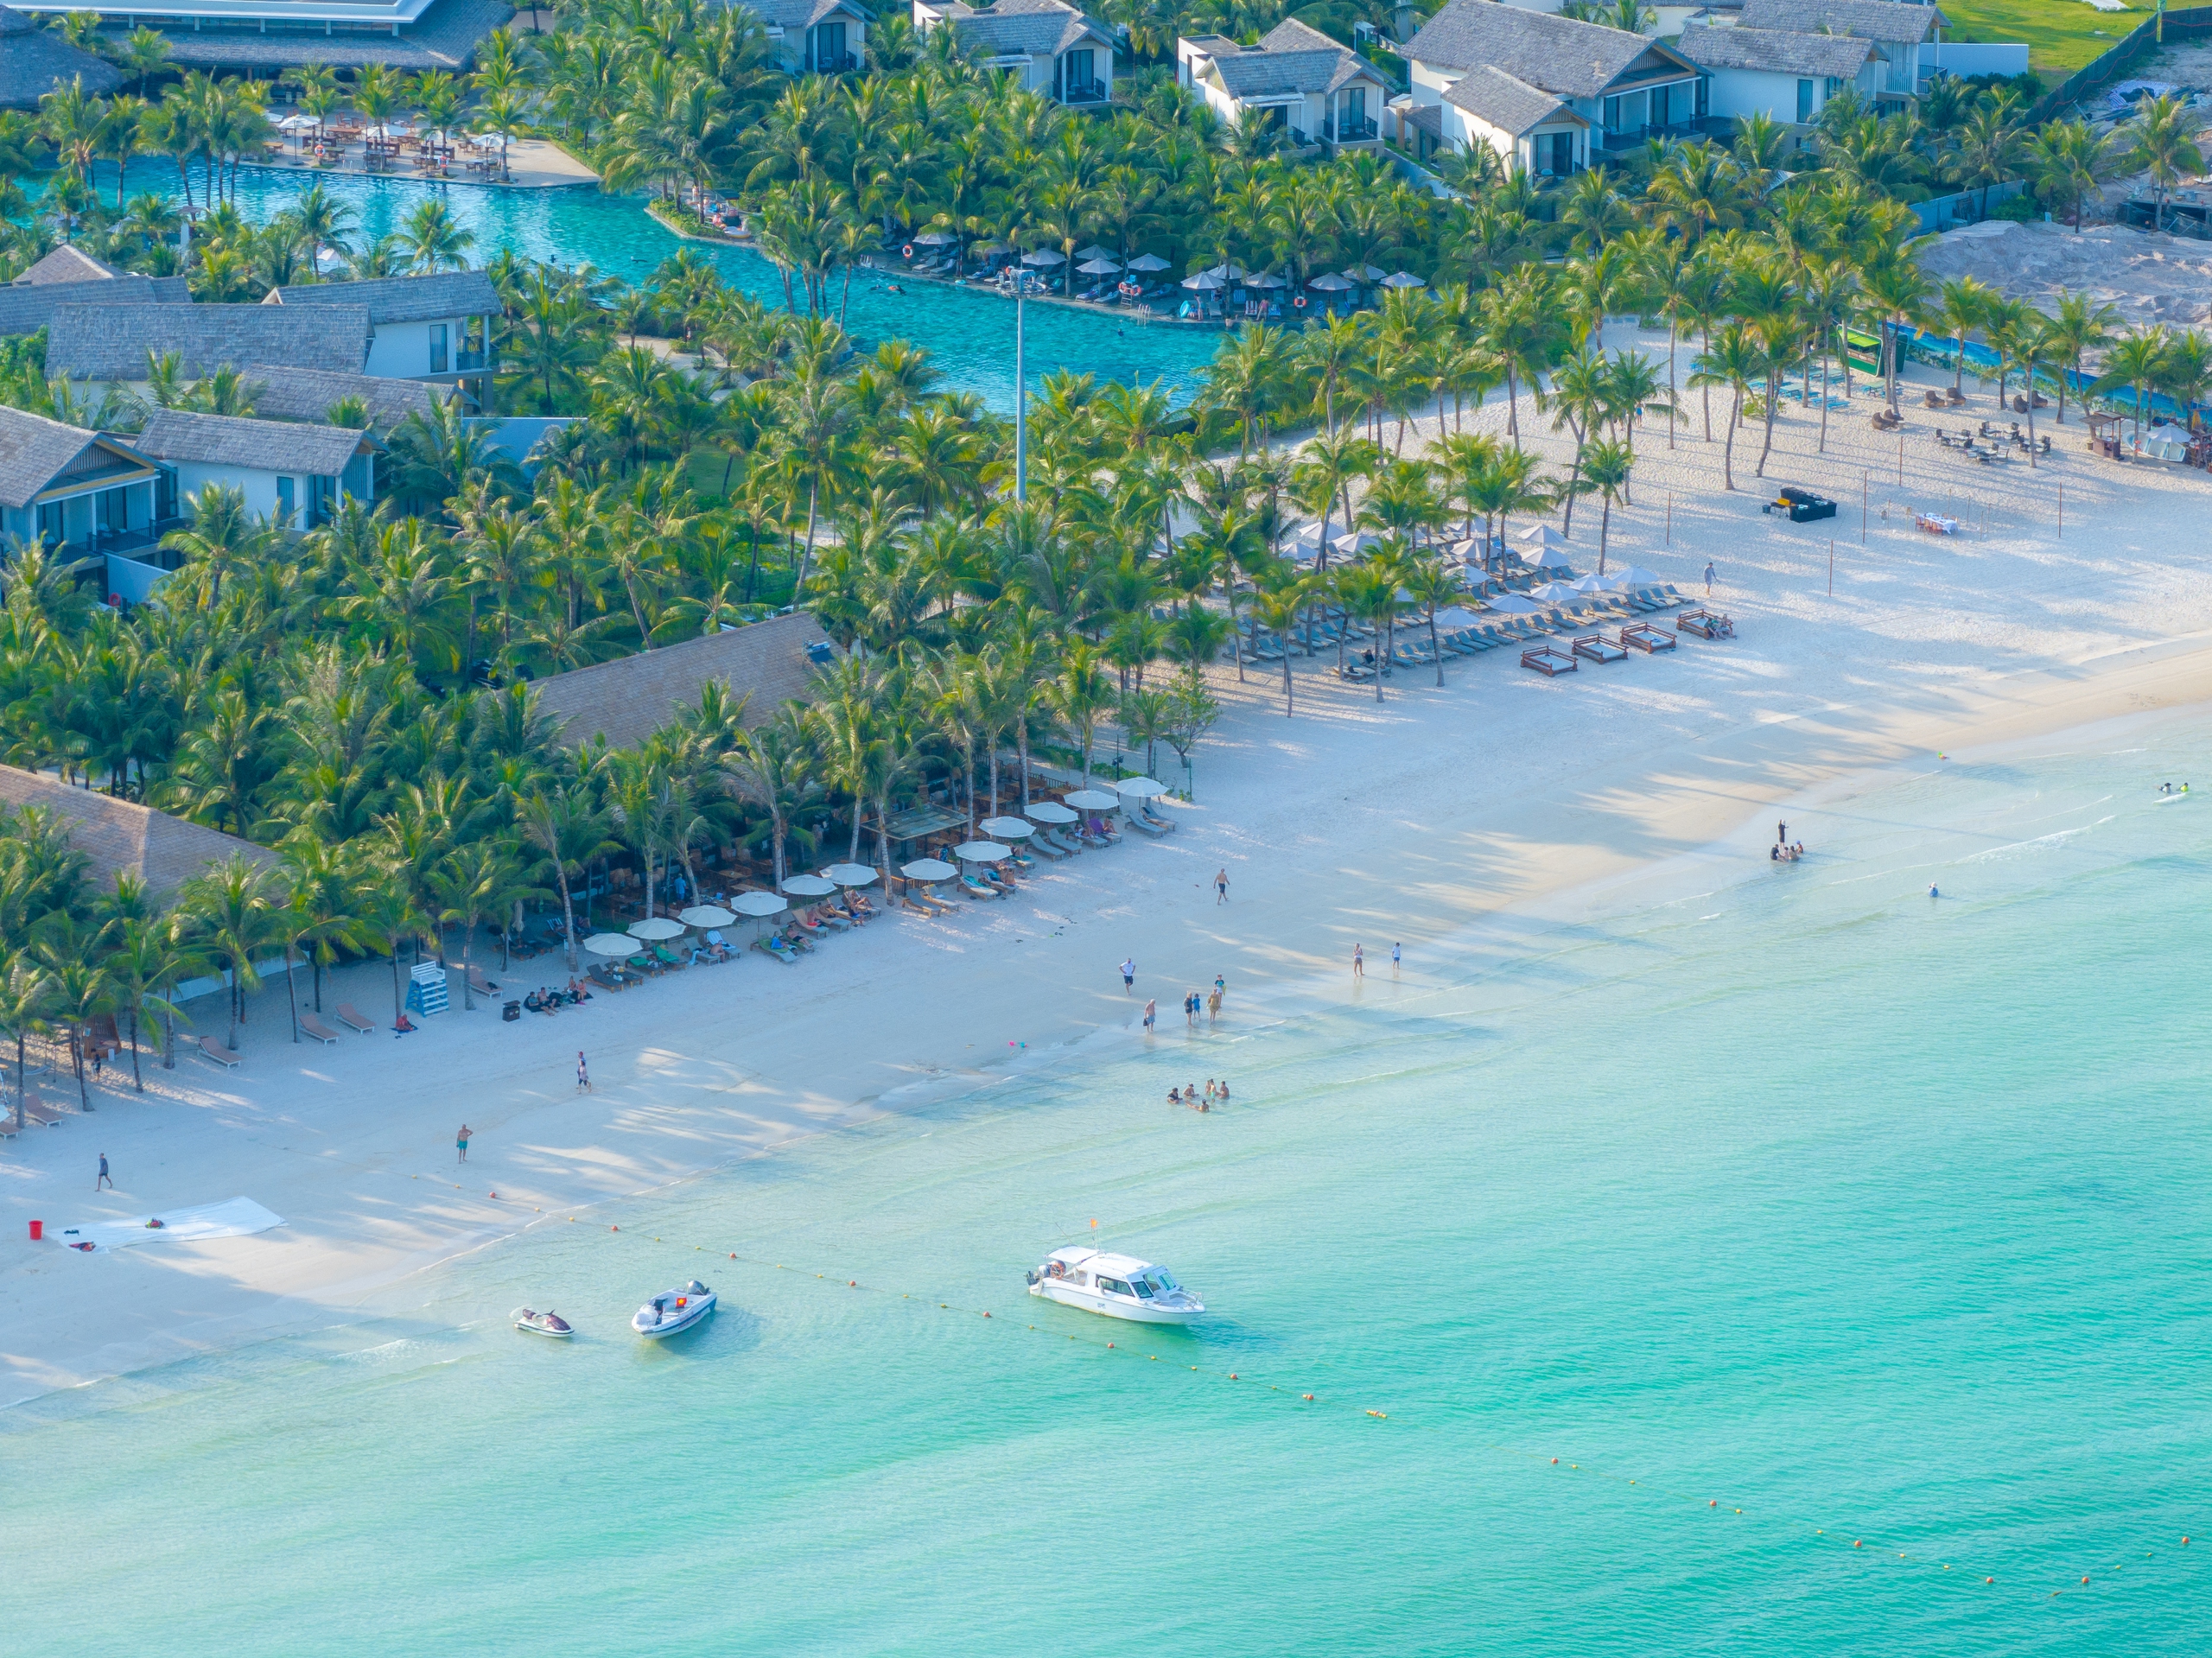 Theo nghiên cứu của công ty du lịch, bãi biển có trung bình 154 ngày nắng và nhiệt độ trung bình 23 độ C, với hình vòng cung quyến rũ và cát trắng mê hoặc, ánh nắng vàng rực rỡ